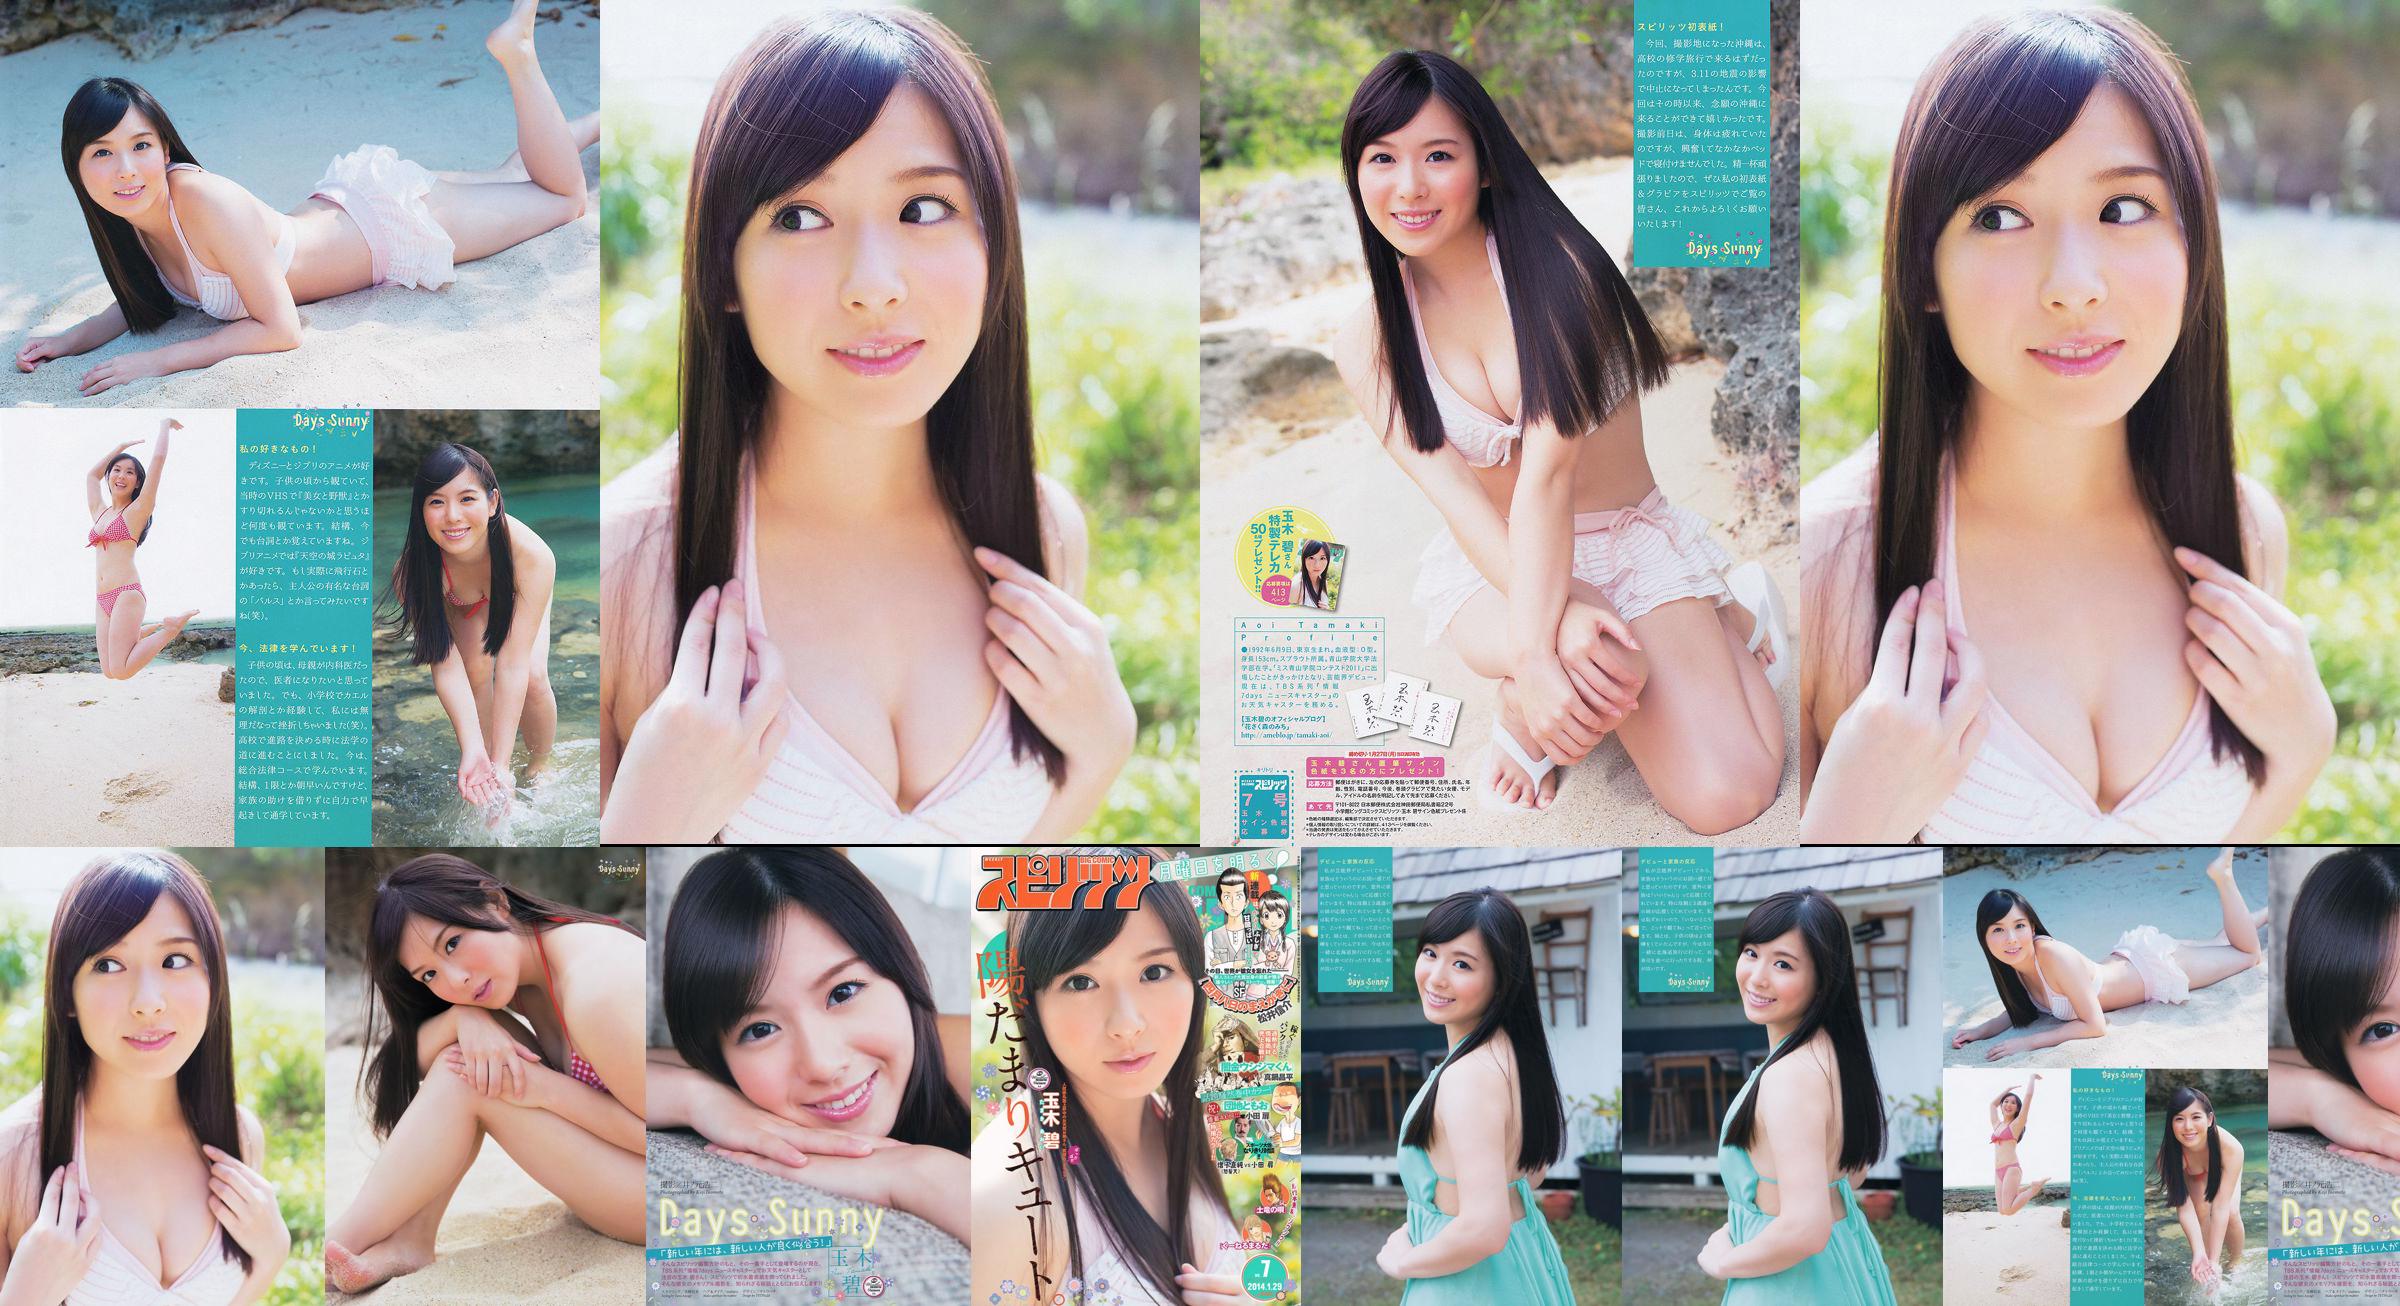 [Wöchentliche große Comic-Geister] Tamakibi 2014 No.07 Photo Magazine No.66a432 Seite 4